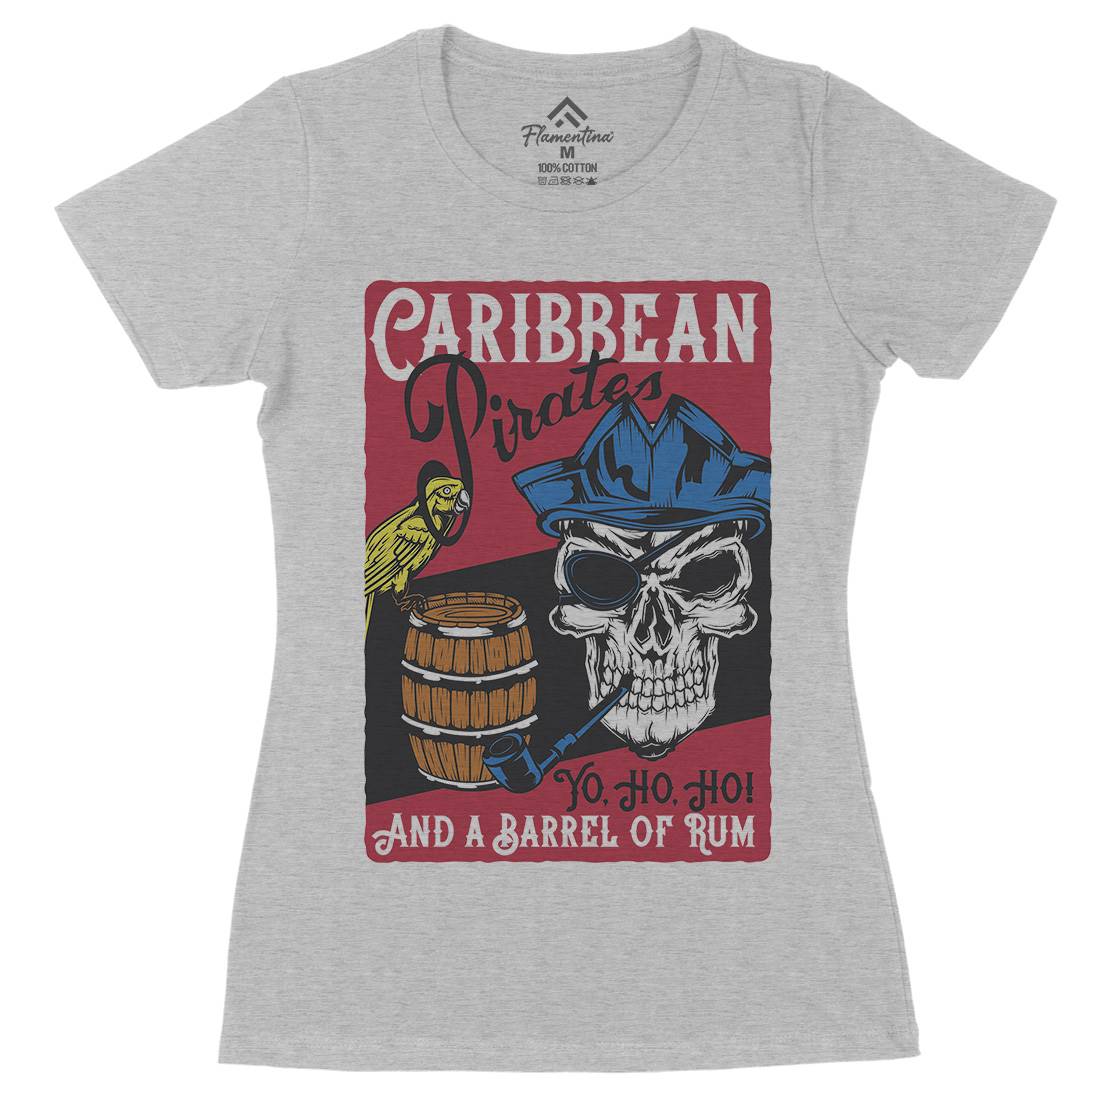 Pirate Womens Organic Crew Neck T-Shirt Navy B163